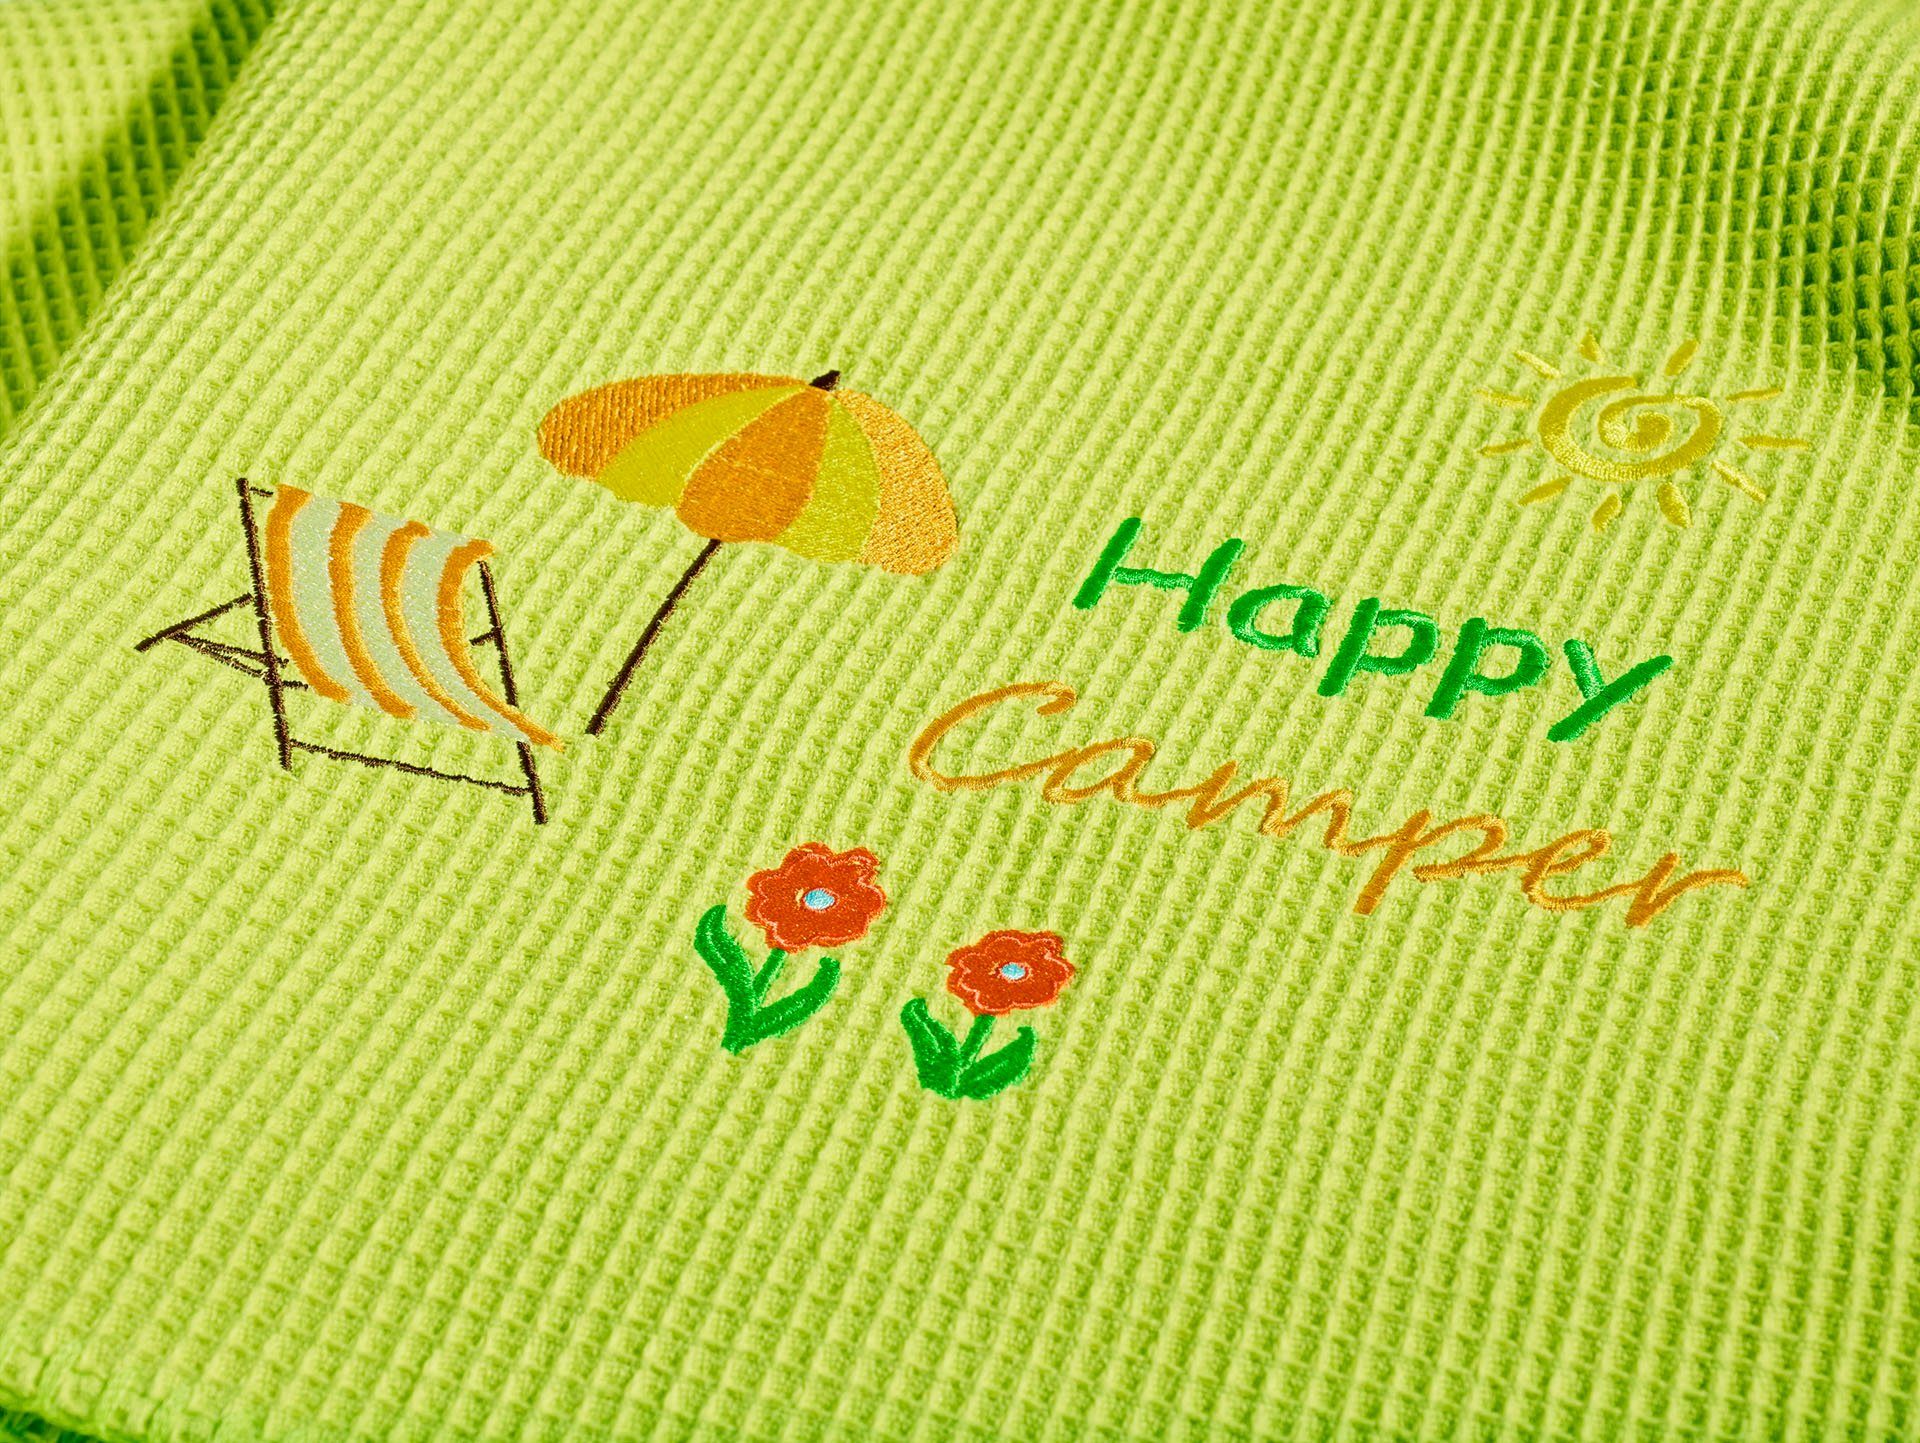 Wohndecke Happy apfelgrün Schriftzug Baumwolle, Zierstich, Camper, Kneer, geketteltem